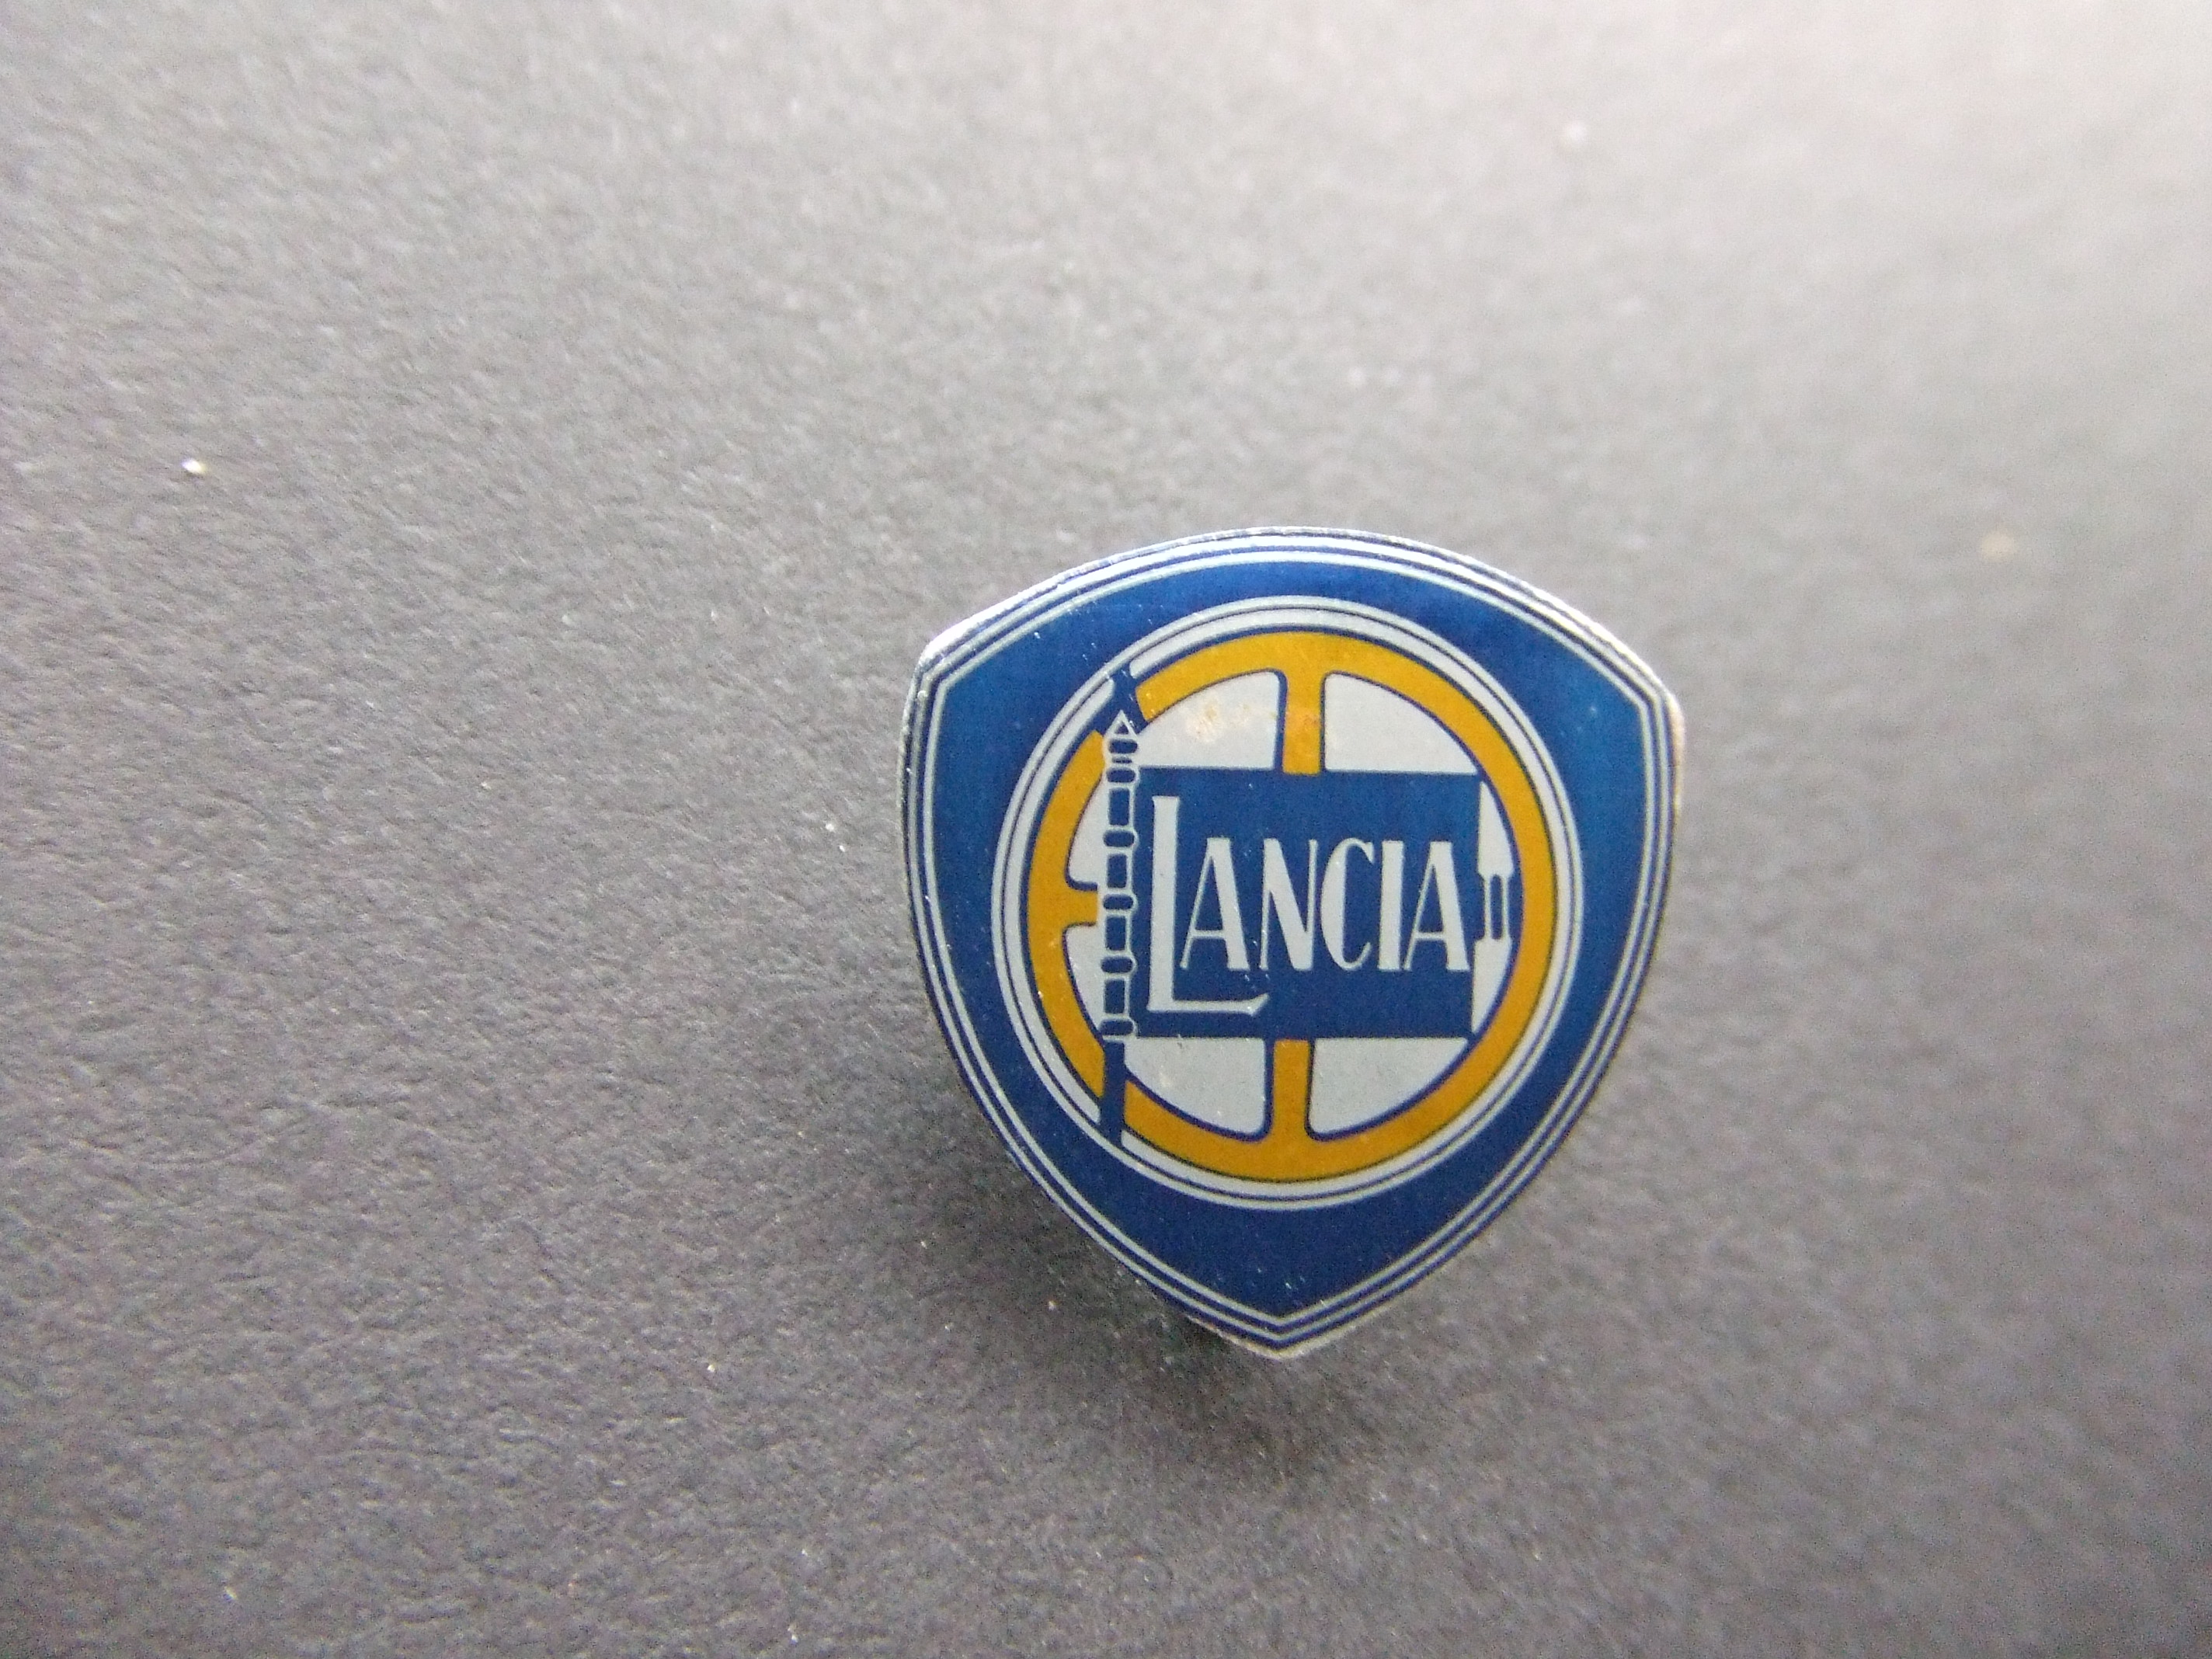 Lancia Italiaans vrachtwagen- en automerk logo geel-blauw